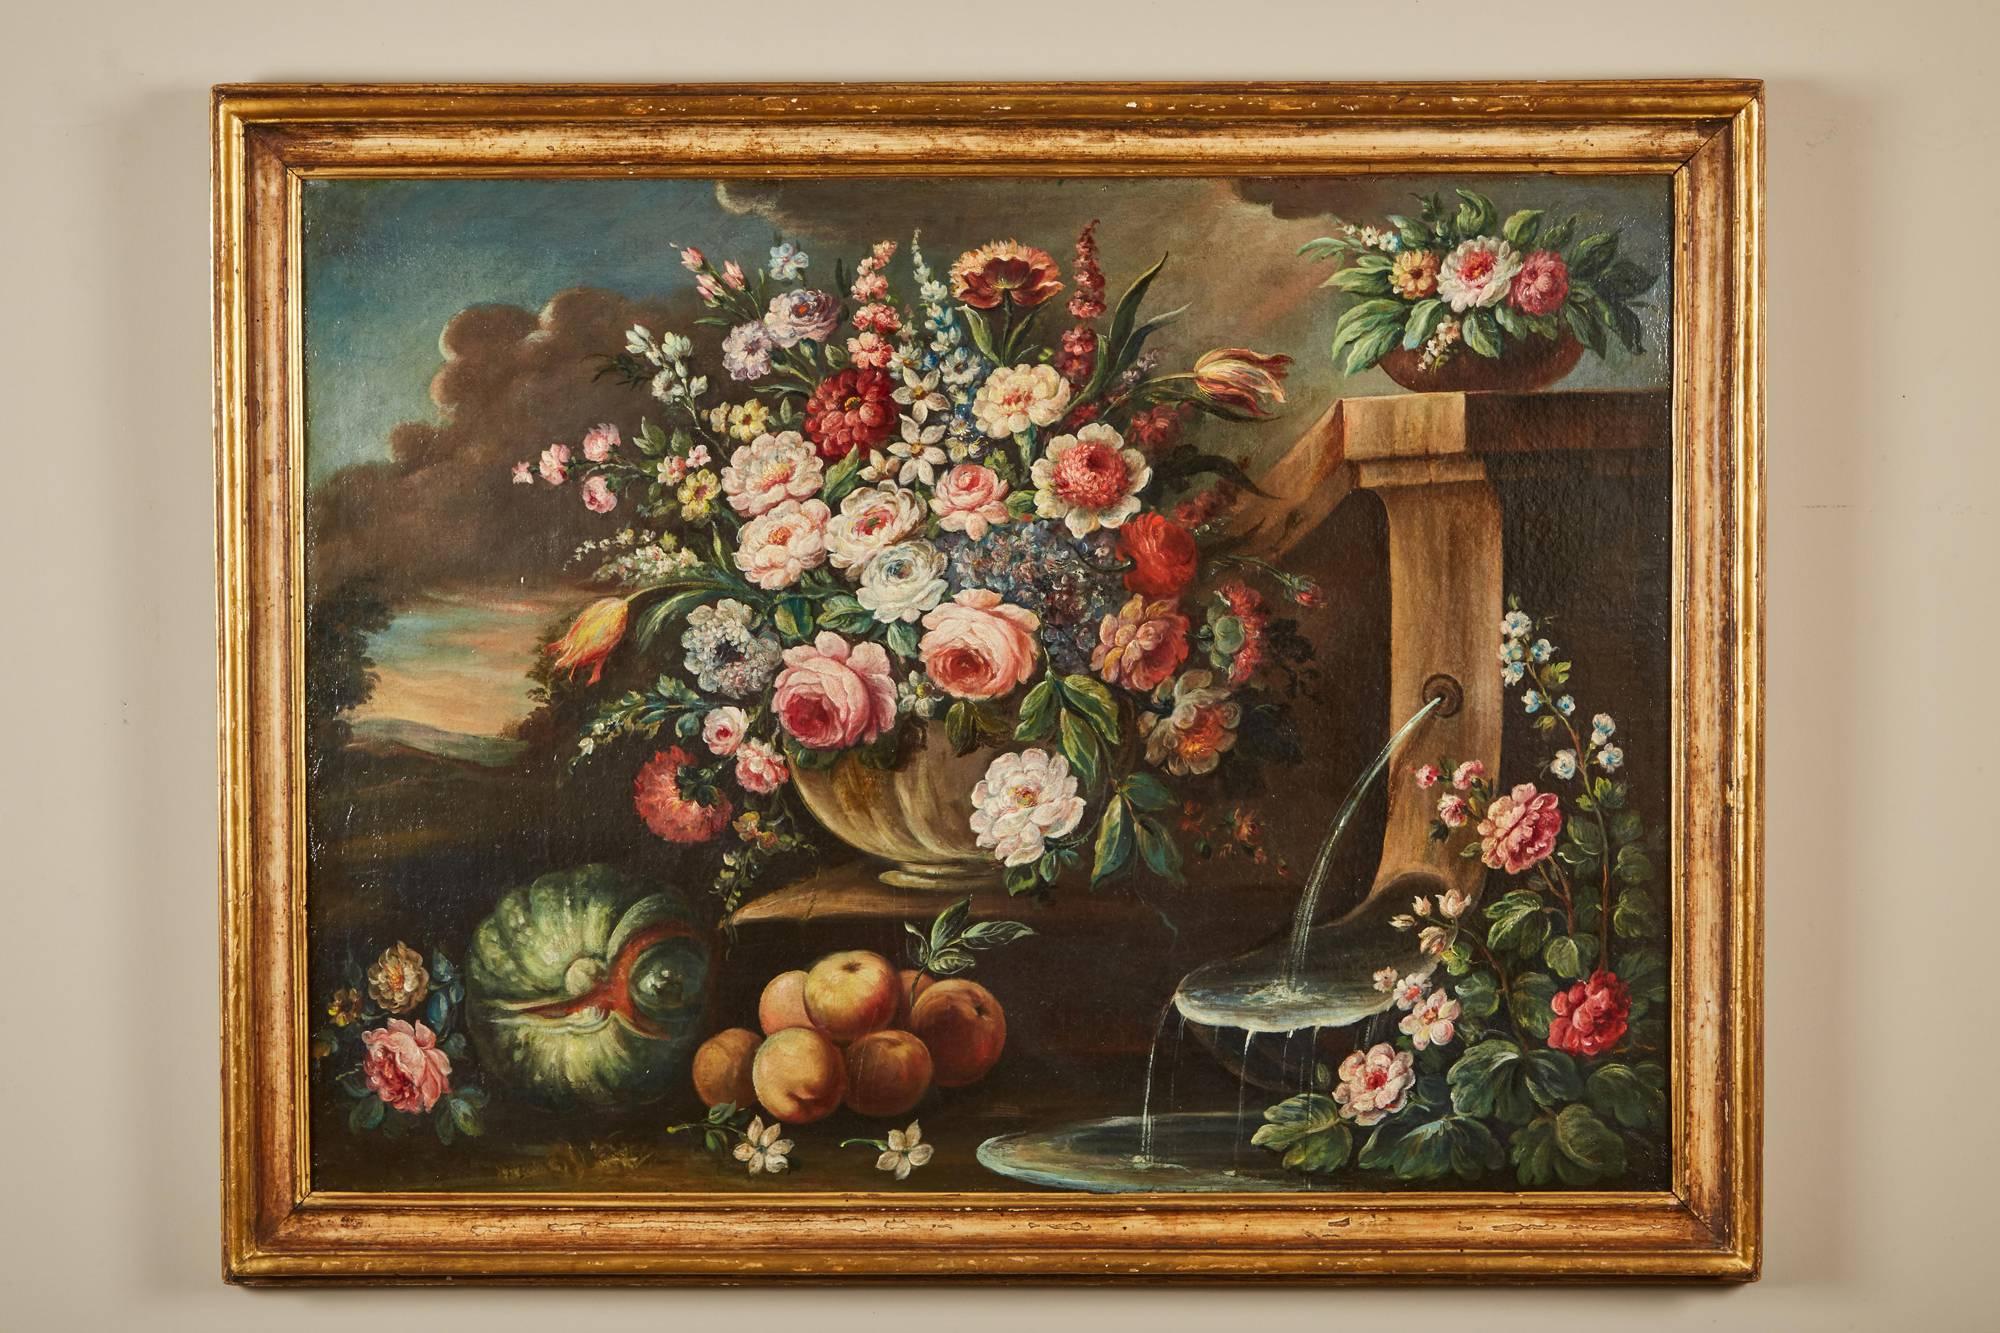 Une grande peinture à l'huile sur toile de l'école italienne du 19ème siècle dans un cadre en bois doré. La peinture représente un vase avec un arrangement floral, une fontaine et des fruits, dans un paysage en arrière-plan, un luminaire attaché au